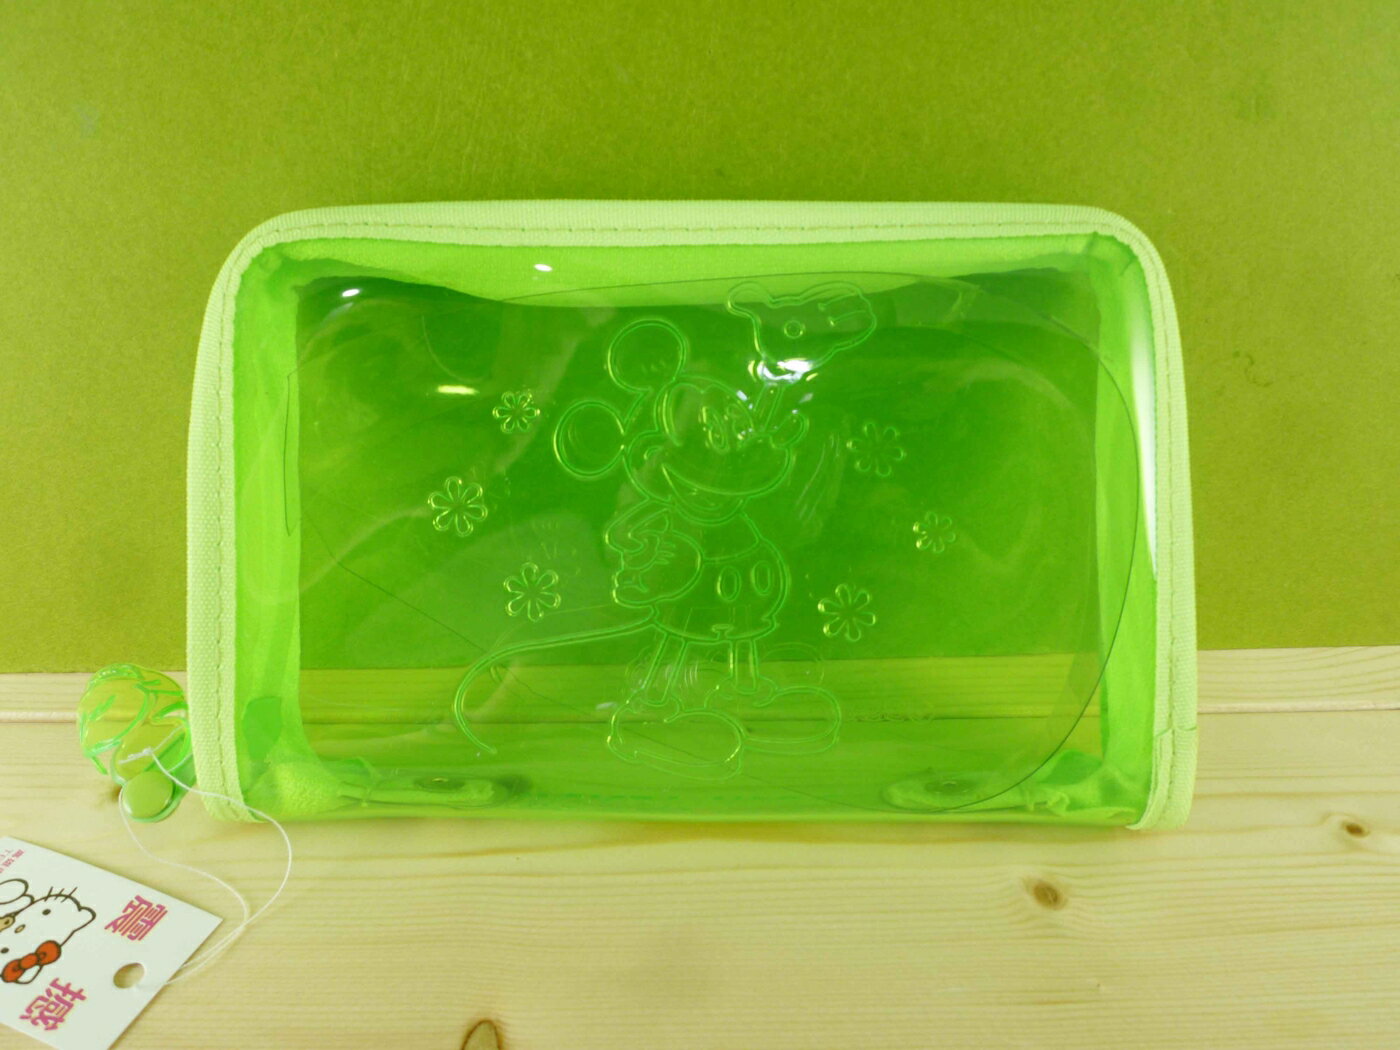 【震撼精品百貨】Micky Mouse 米奇/米妮 透明拉鍊袋-綠 震撼日式精品百貨